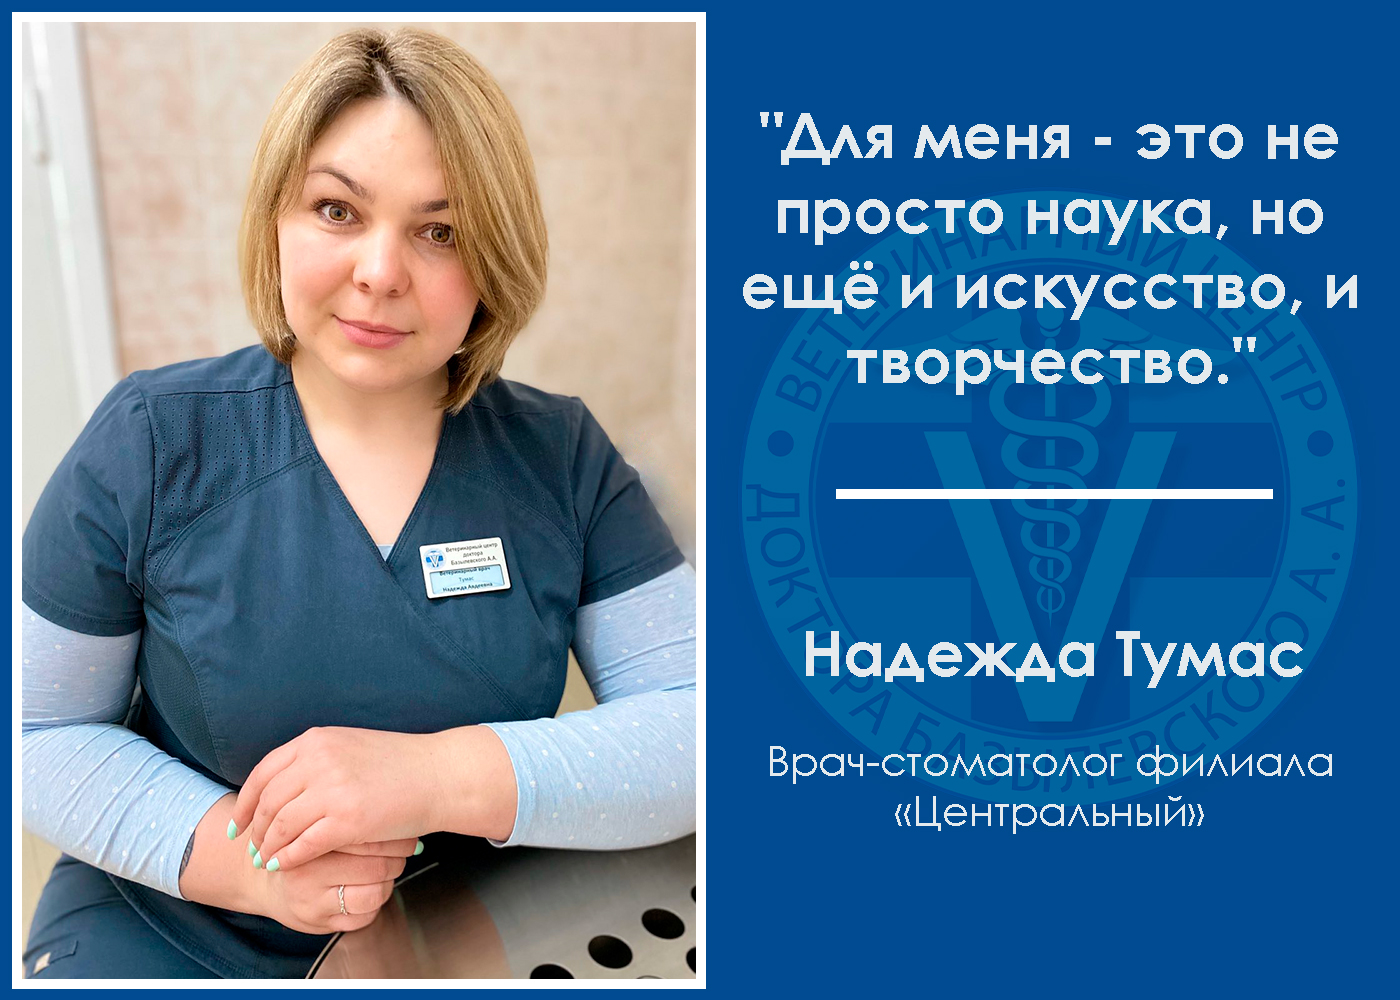 intervyu-s-veterinarnym-stomatologom-tumas-nadezhdoy